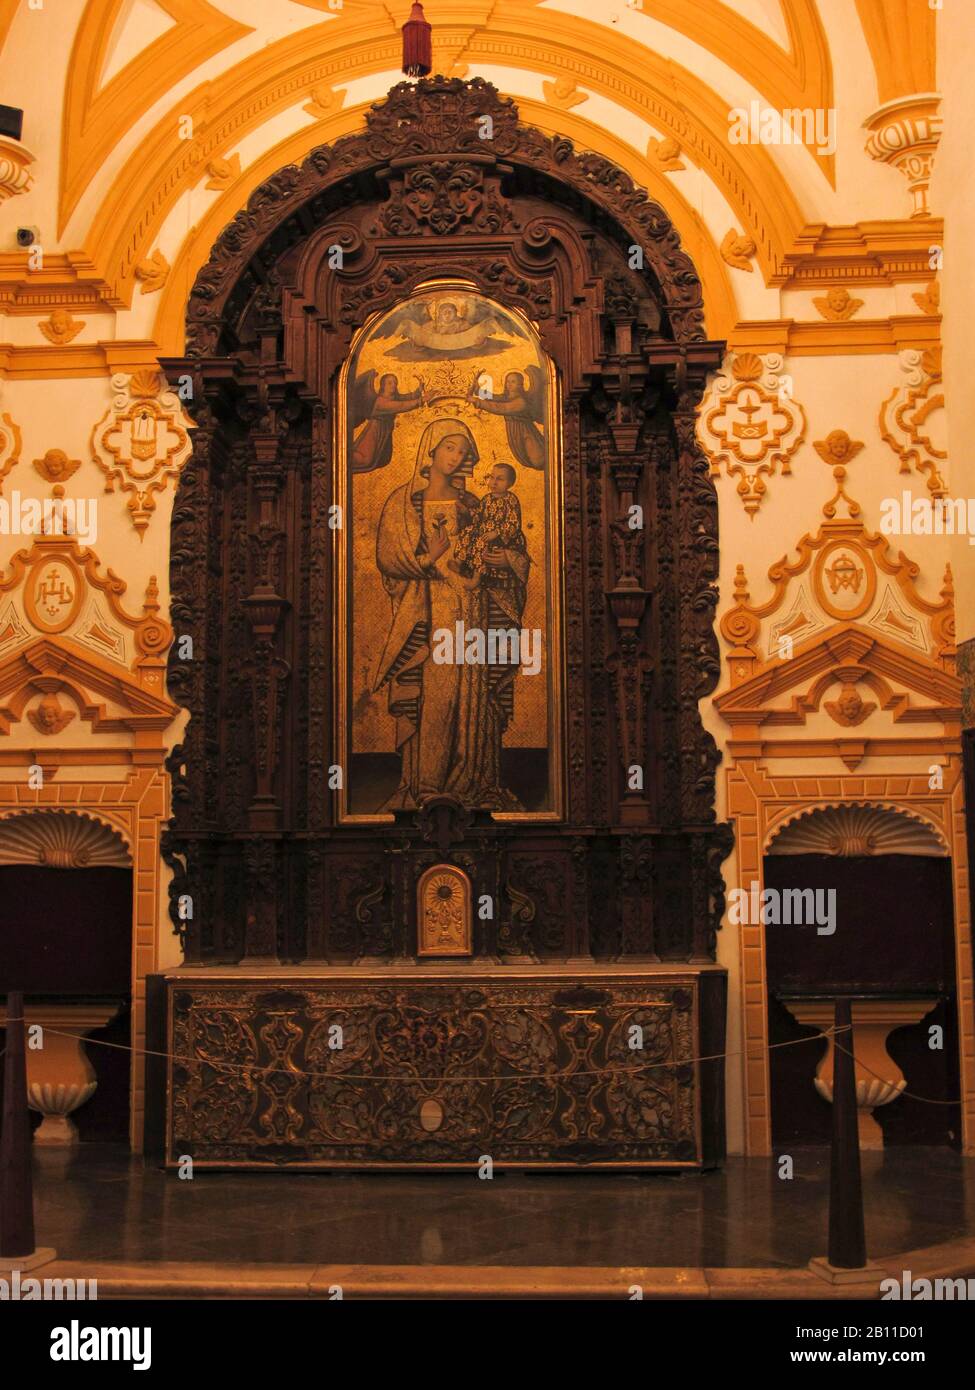 Retablo de l'Antigua Virgen. Reales Alcazares. Séville. Andalousie. Espagne Banque D'Images